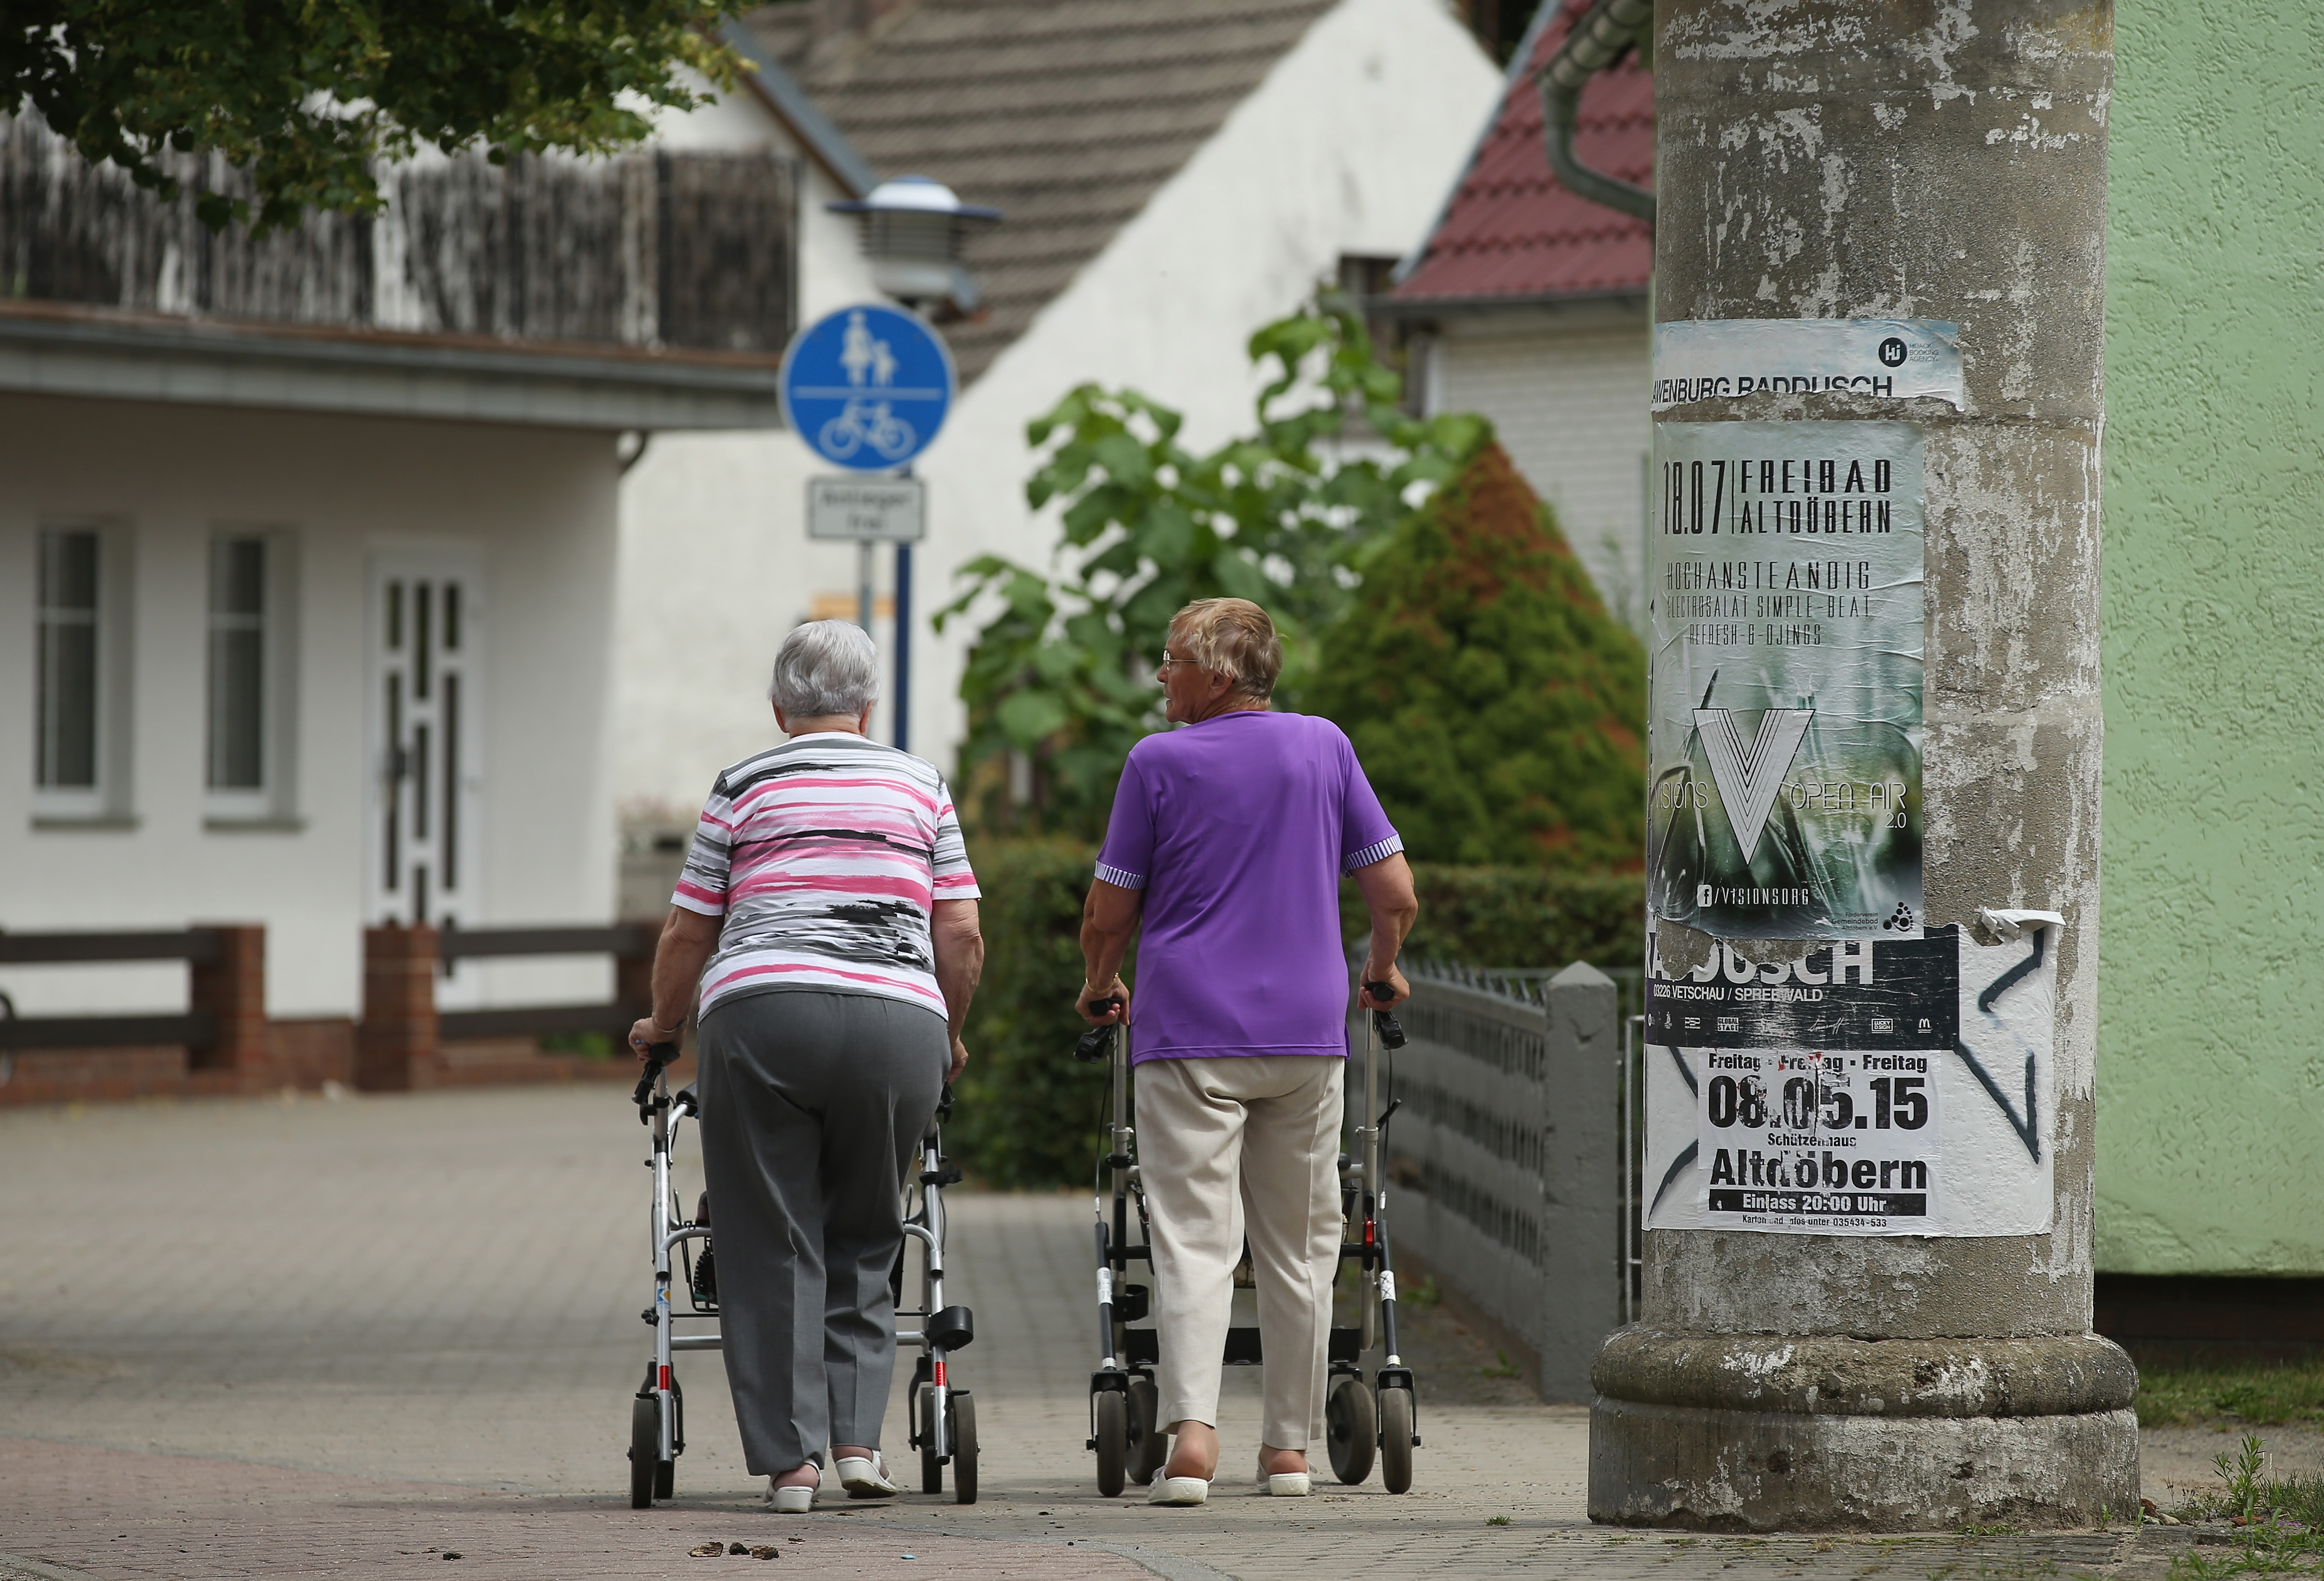 Rentenreform: Die Riester-Rente ist gescheitert, erklärt Seehofer